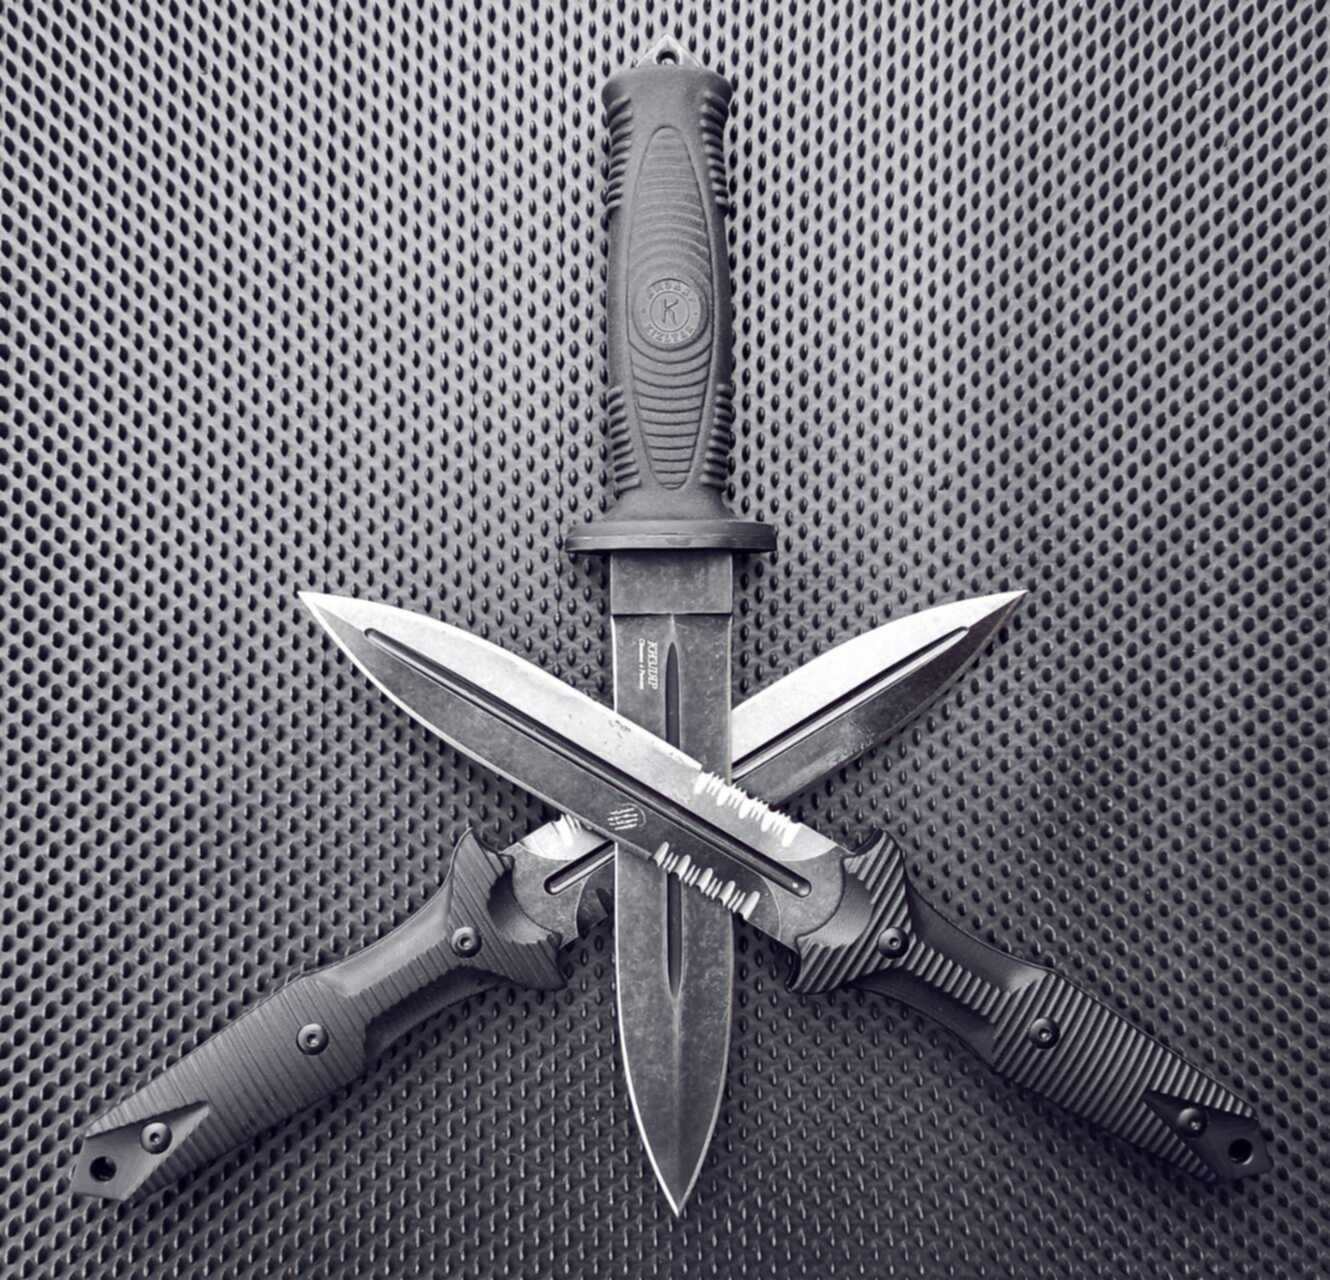 Knife combat в rust фото 86